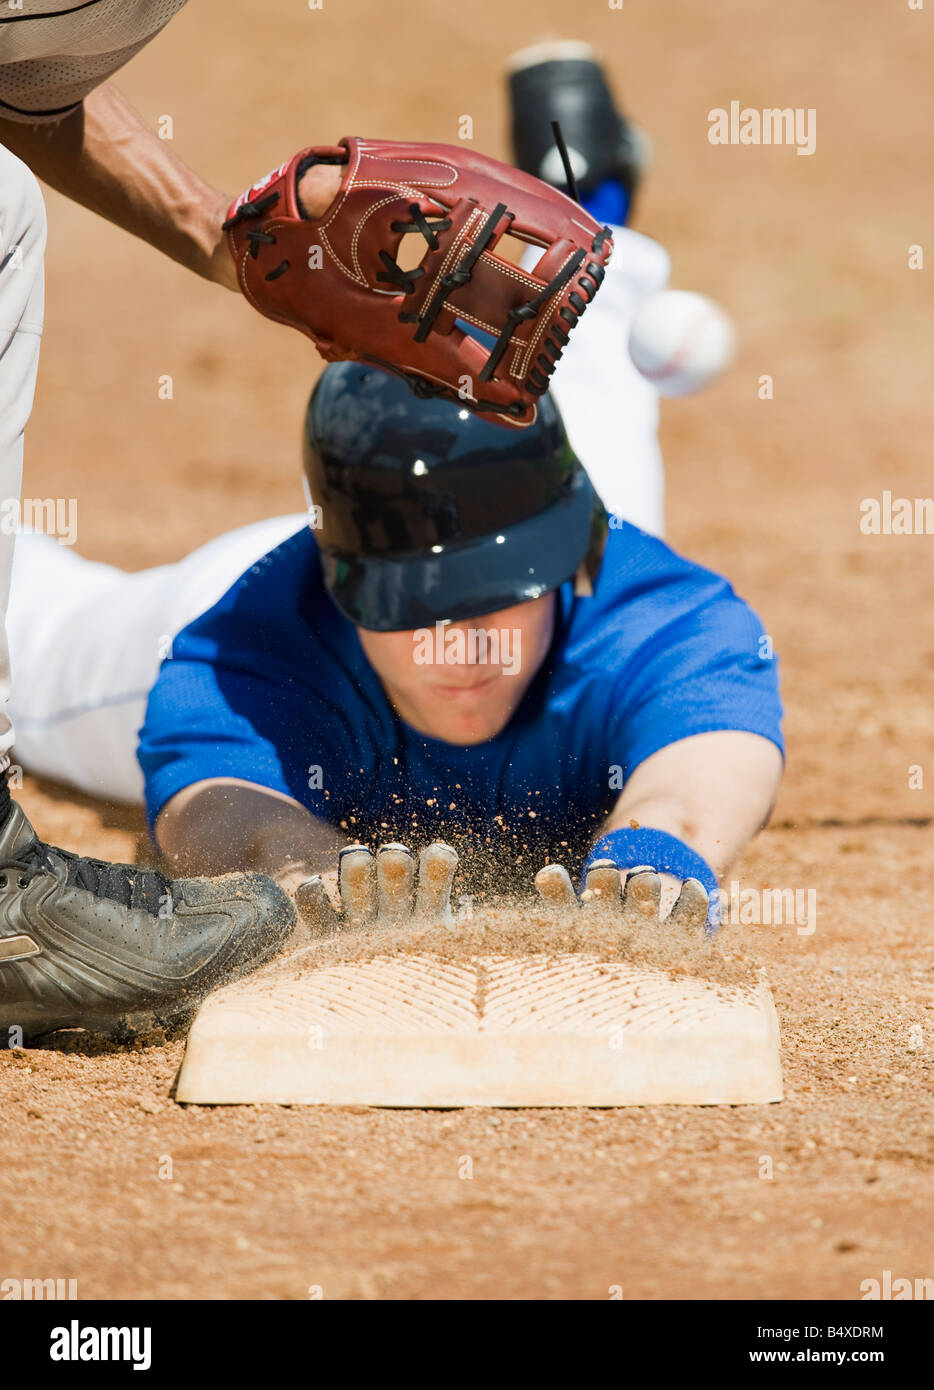 Baseball Sliding